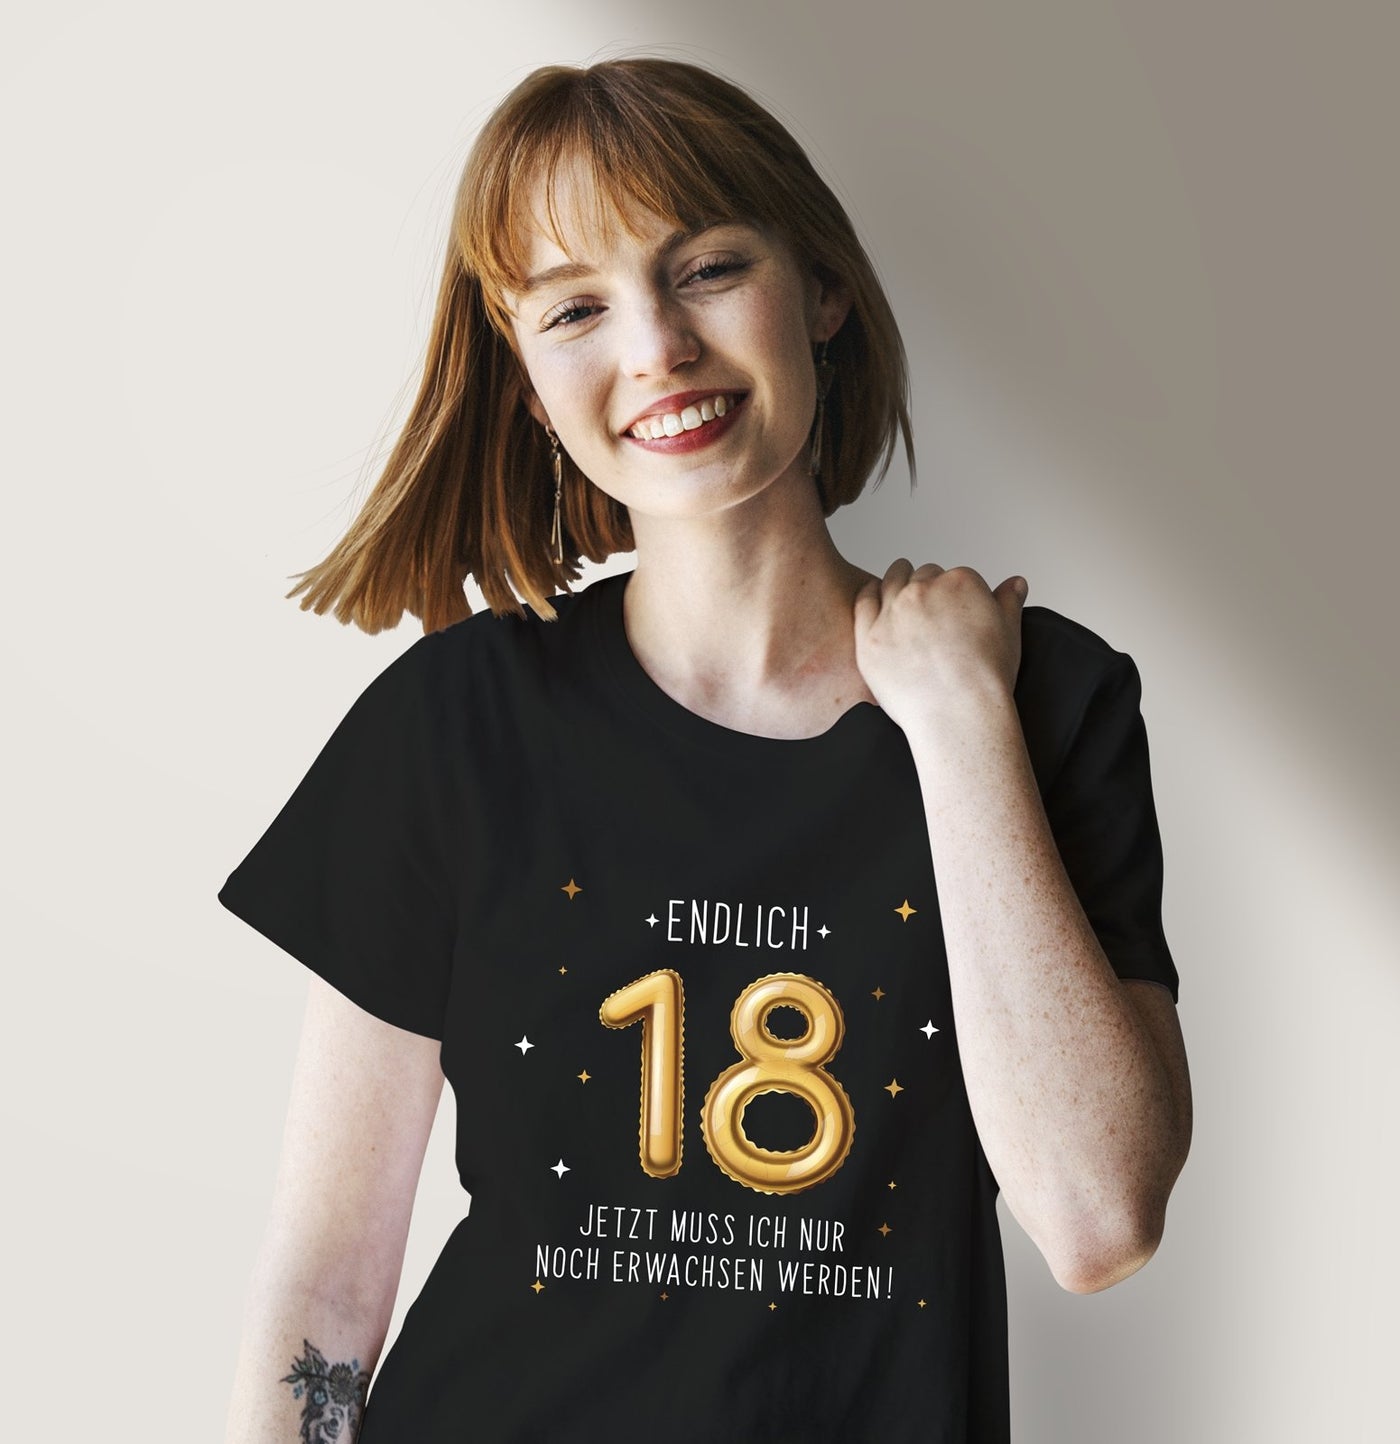 Endlich 18 - erwachsen werden T-Shirt zum 18. Geburtstag